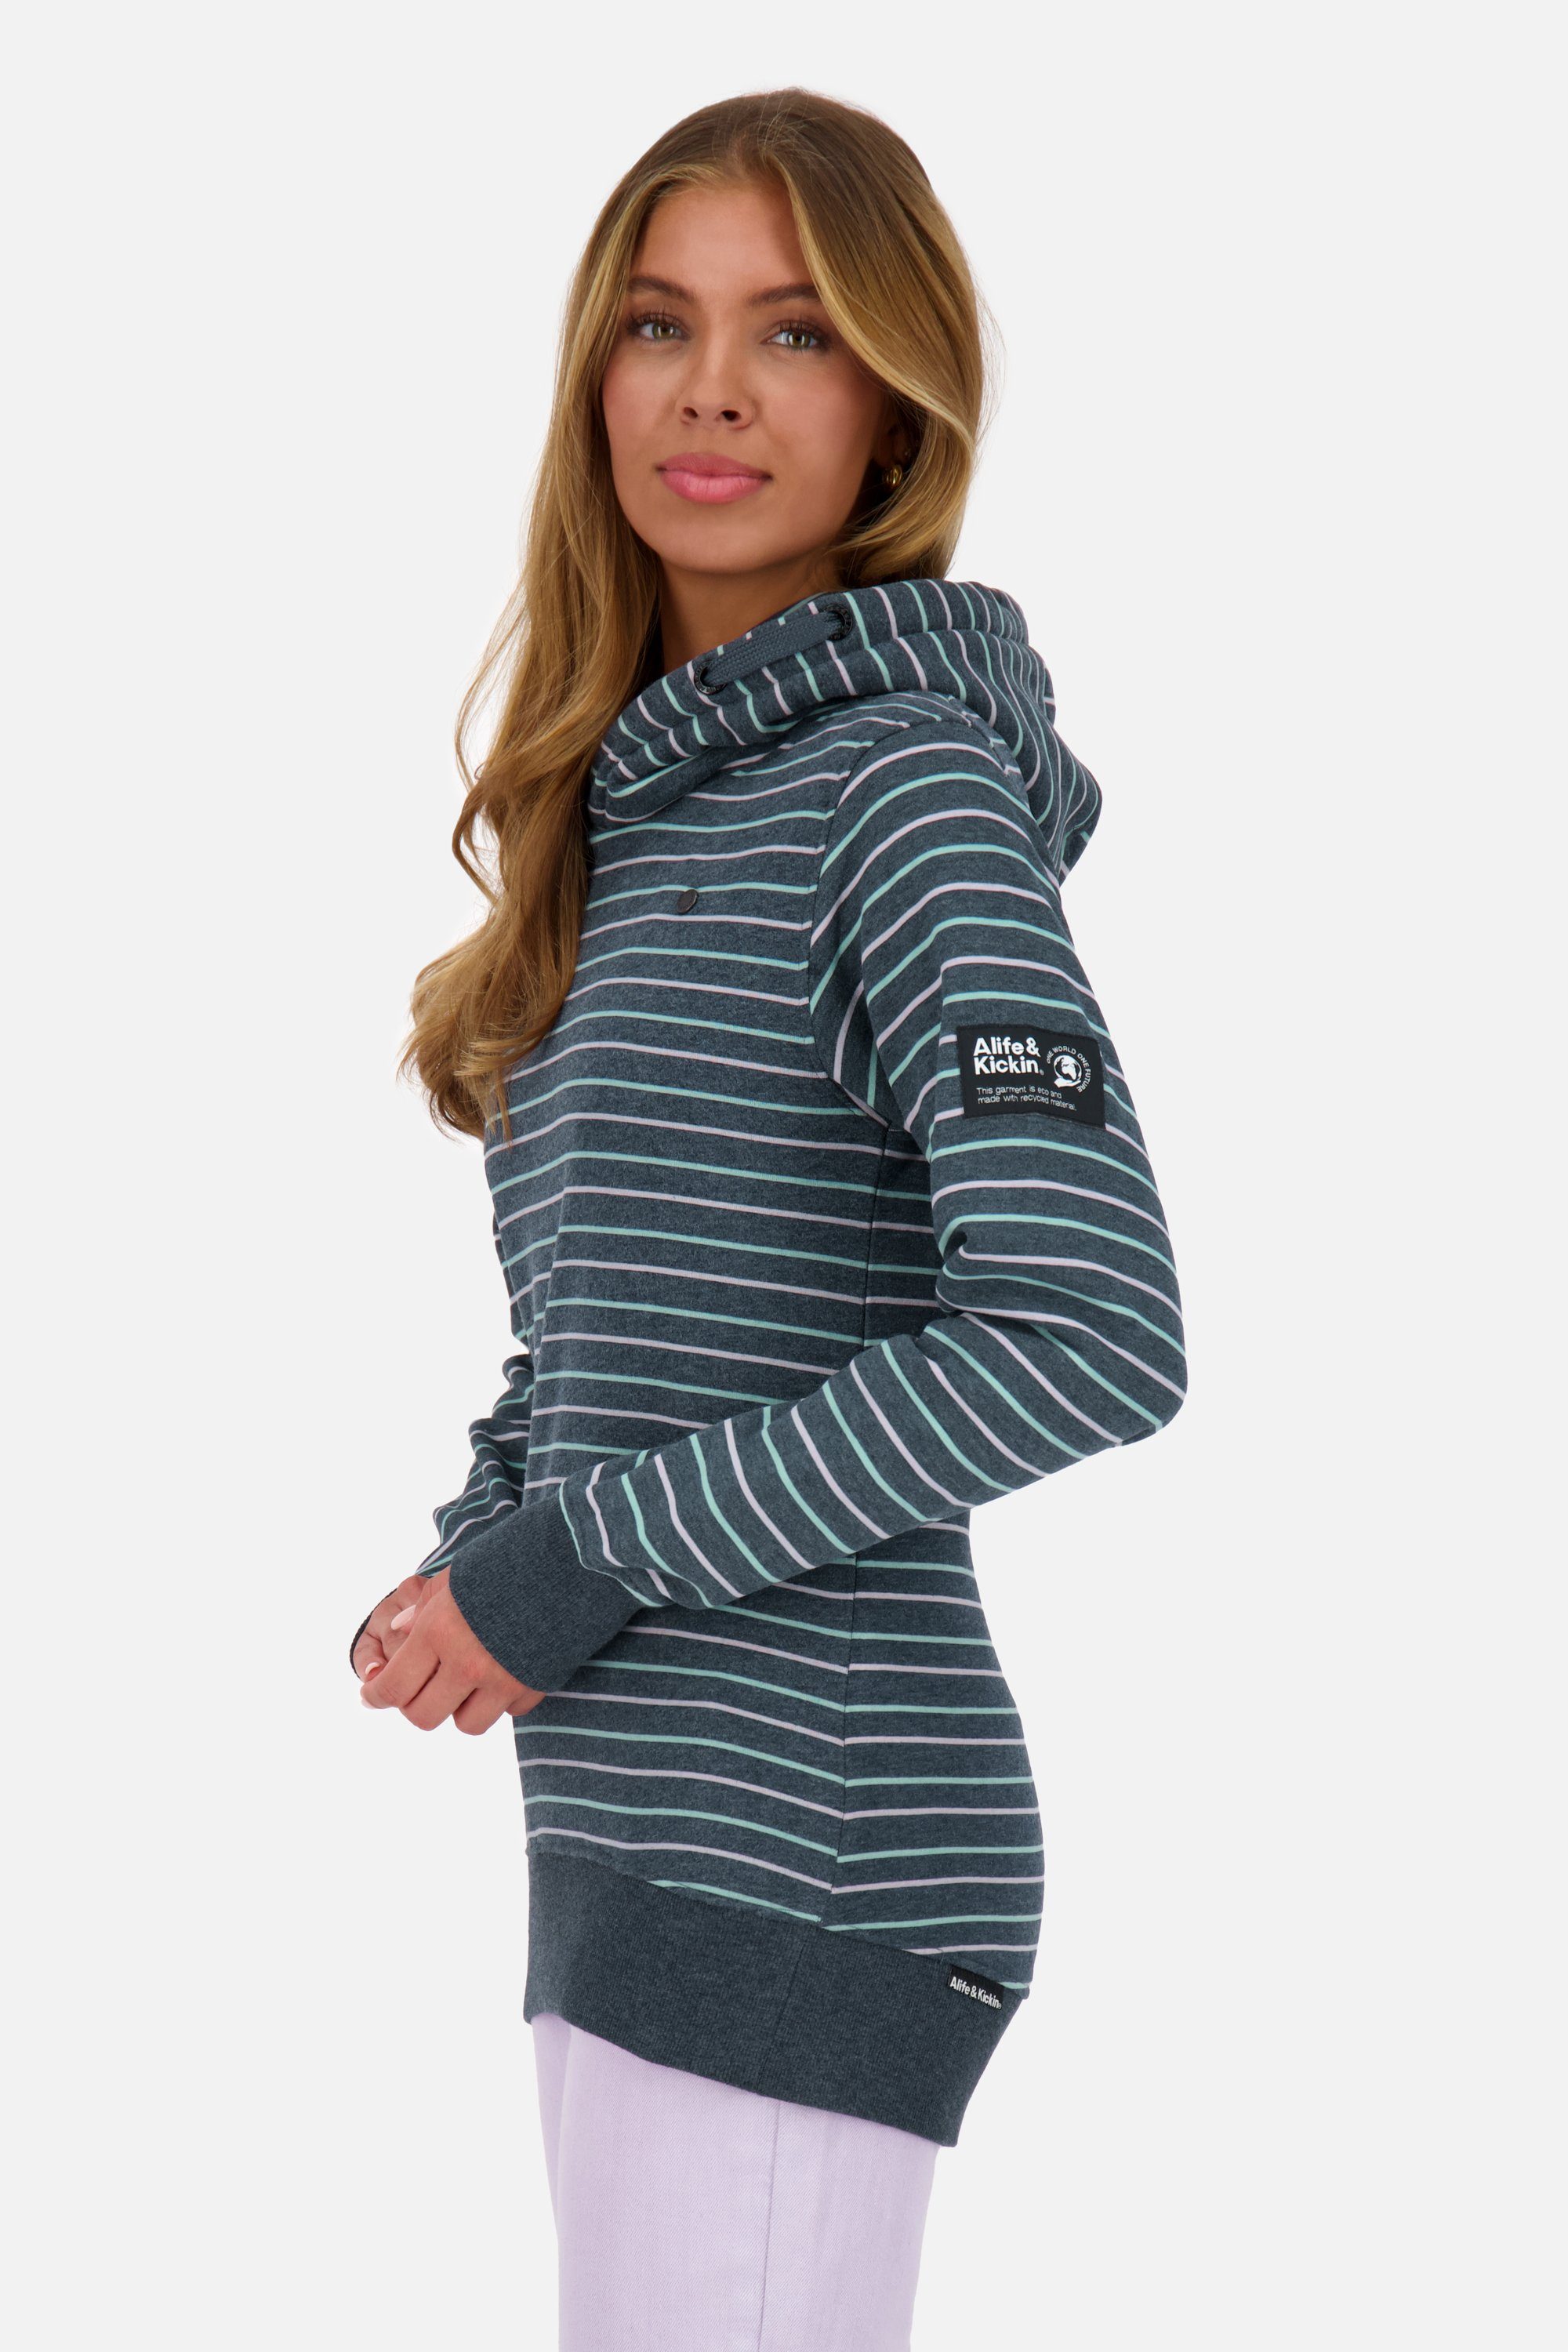 Alife & marine SarinaAK Pullover Damen Kickin Hoodie Z melange Kapuzensweatshirt, Kapuzensweatshirt